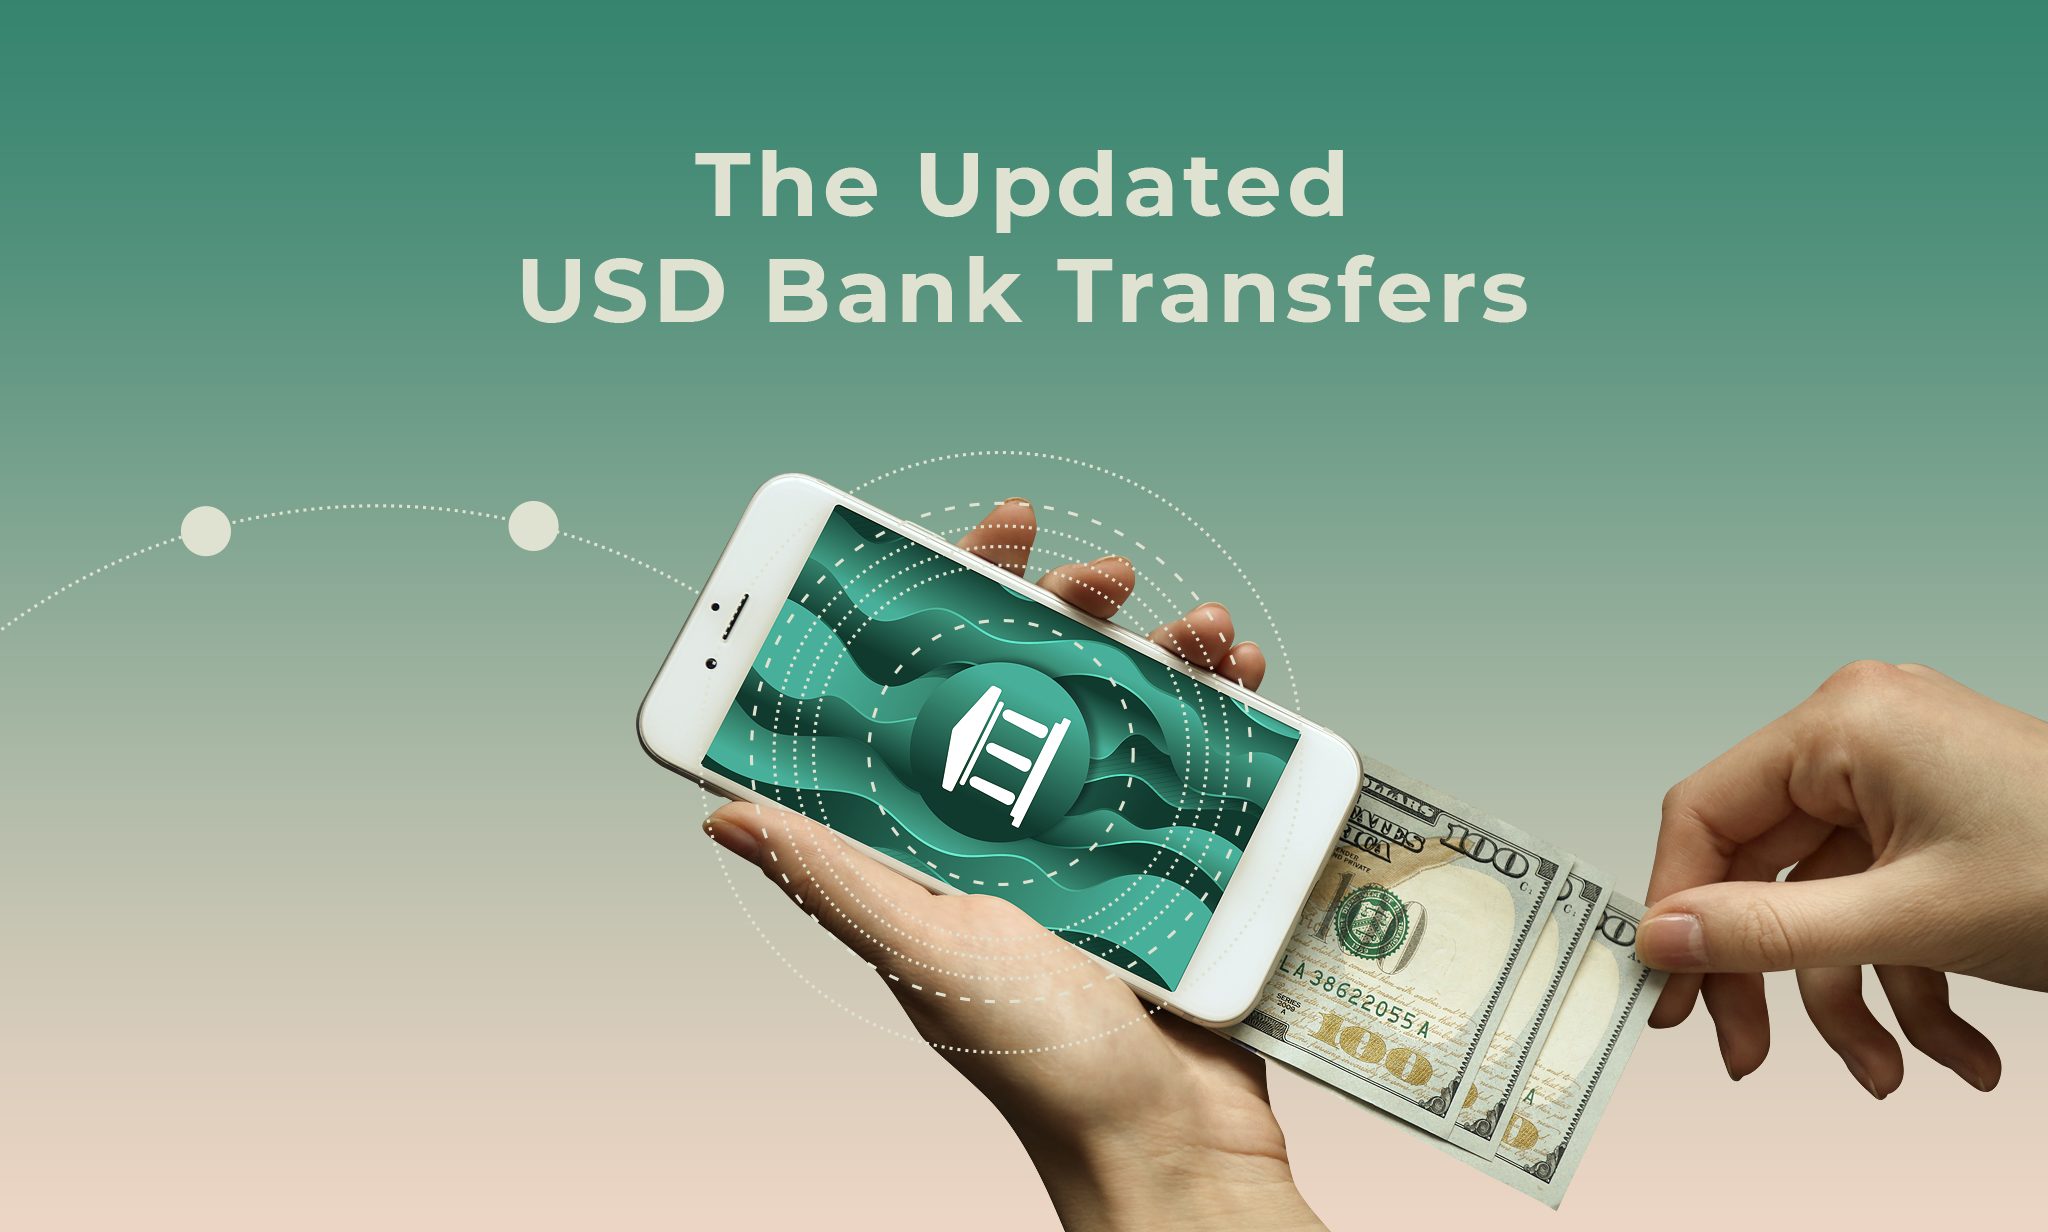 Bank money transfer. Банк transfer. Реклама денег. Трансфер денег.